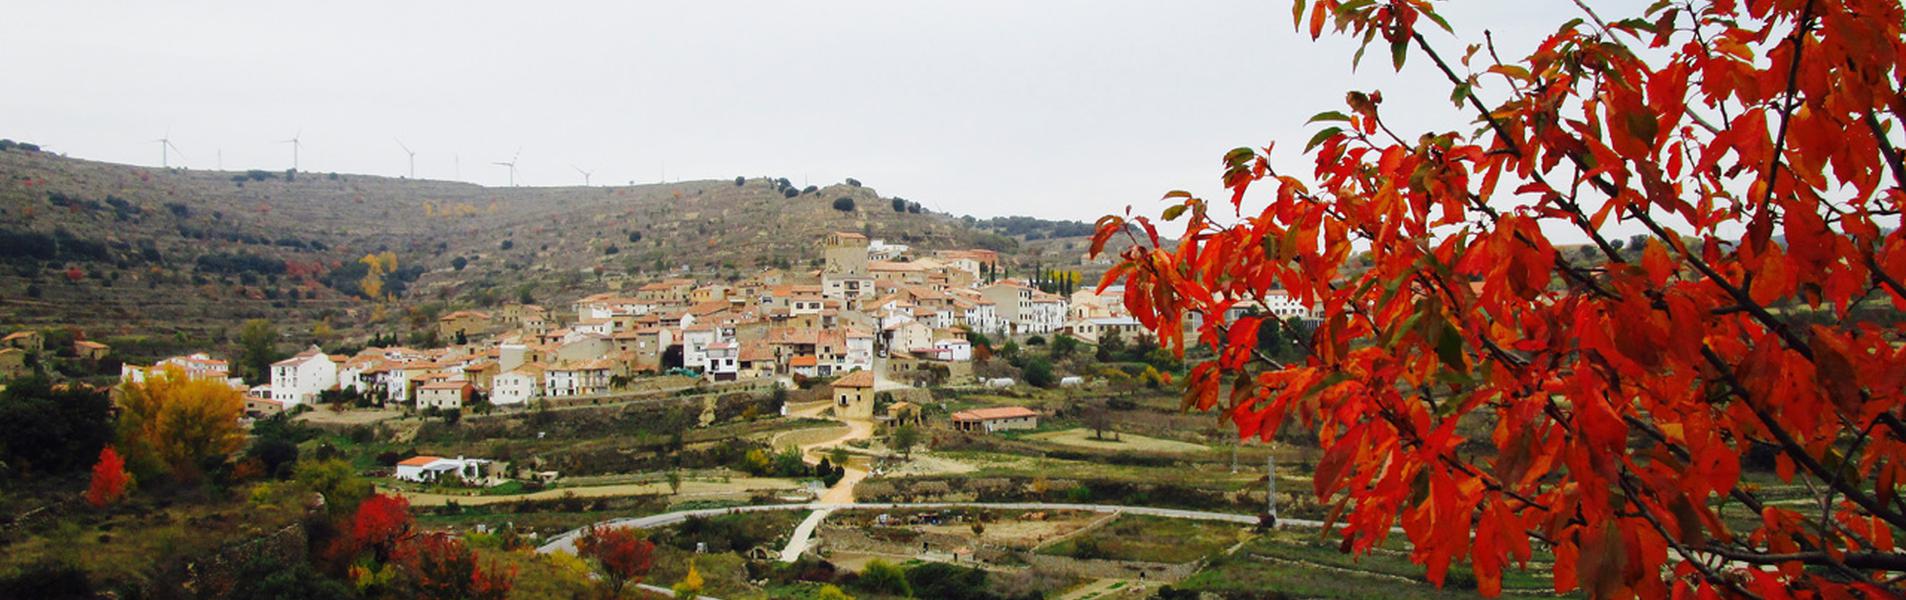 Portell s’incorpora plenament a la Mancomunitat Comarcal Els Ports